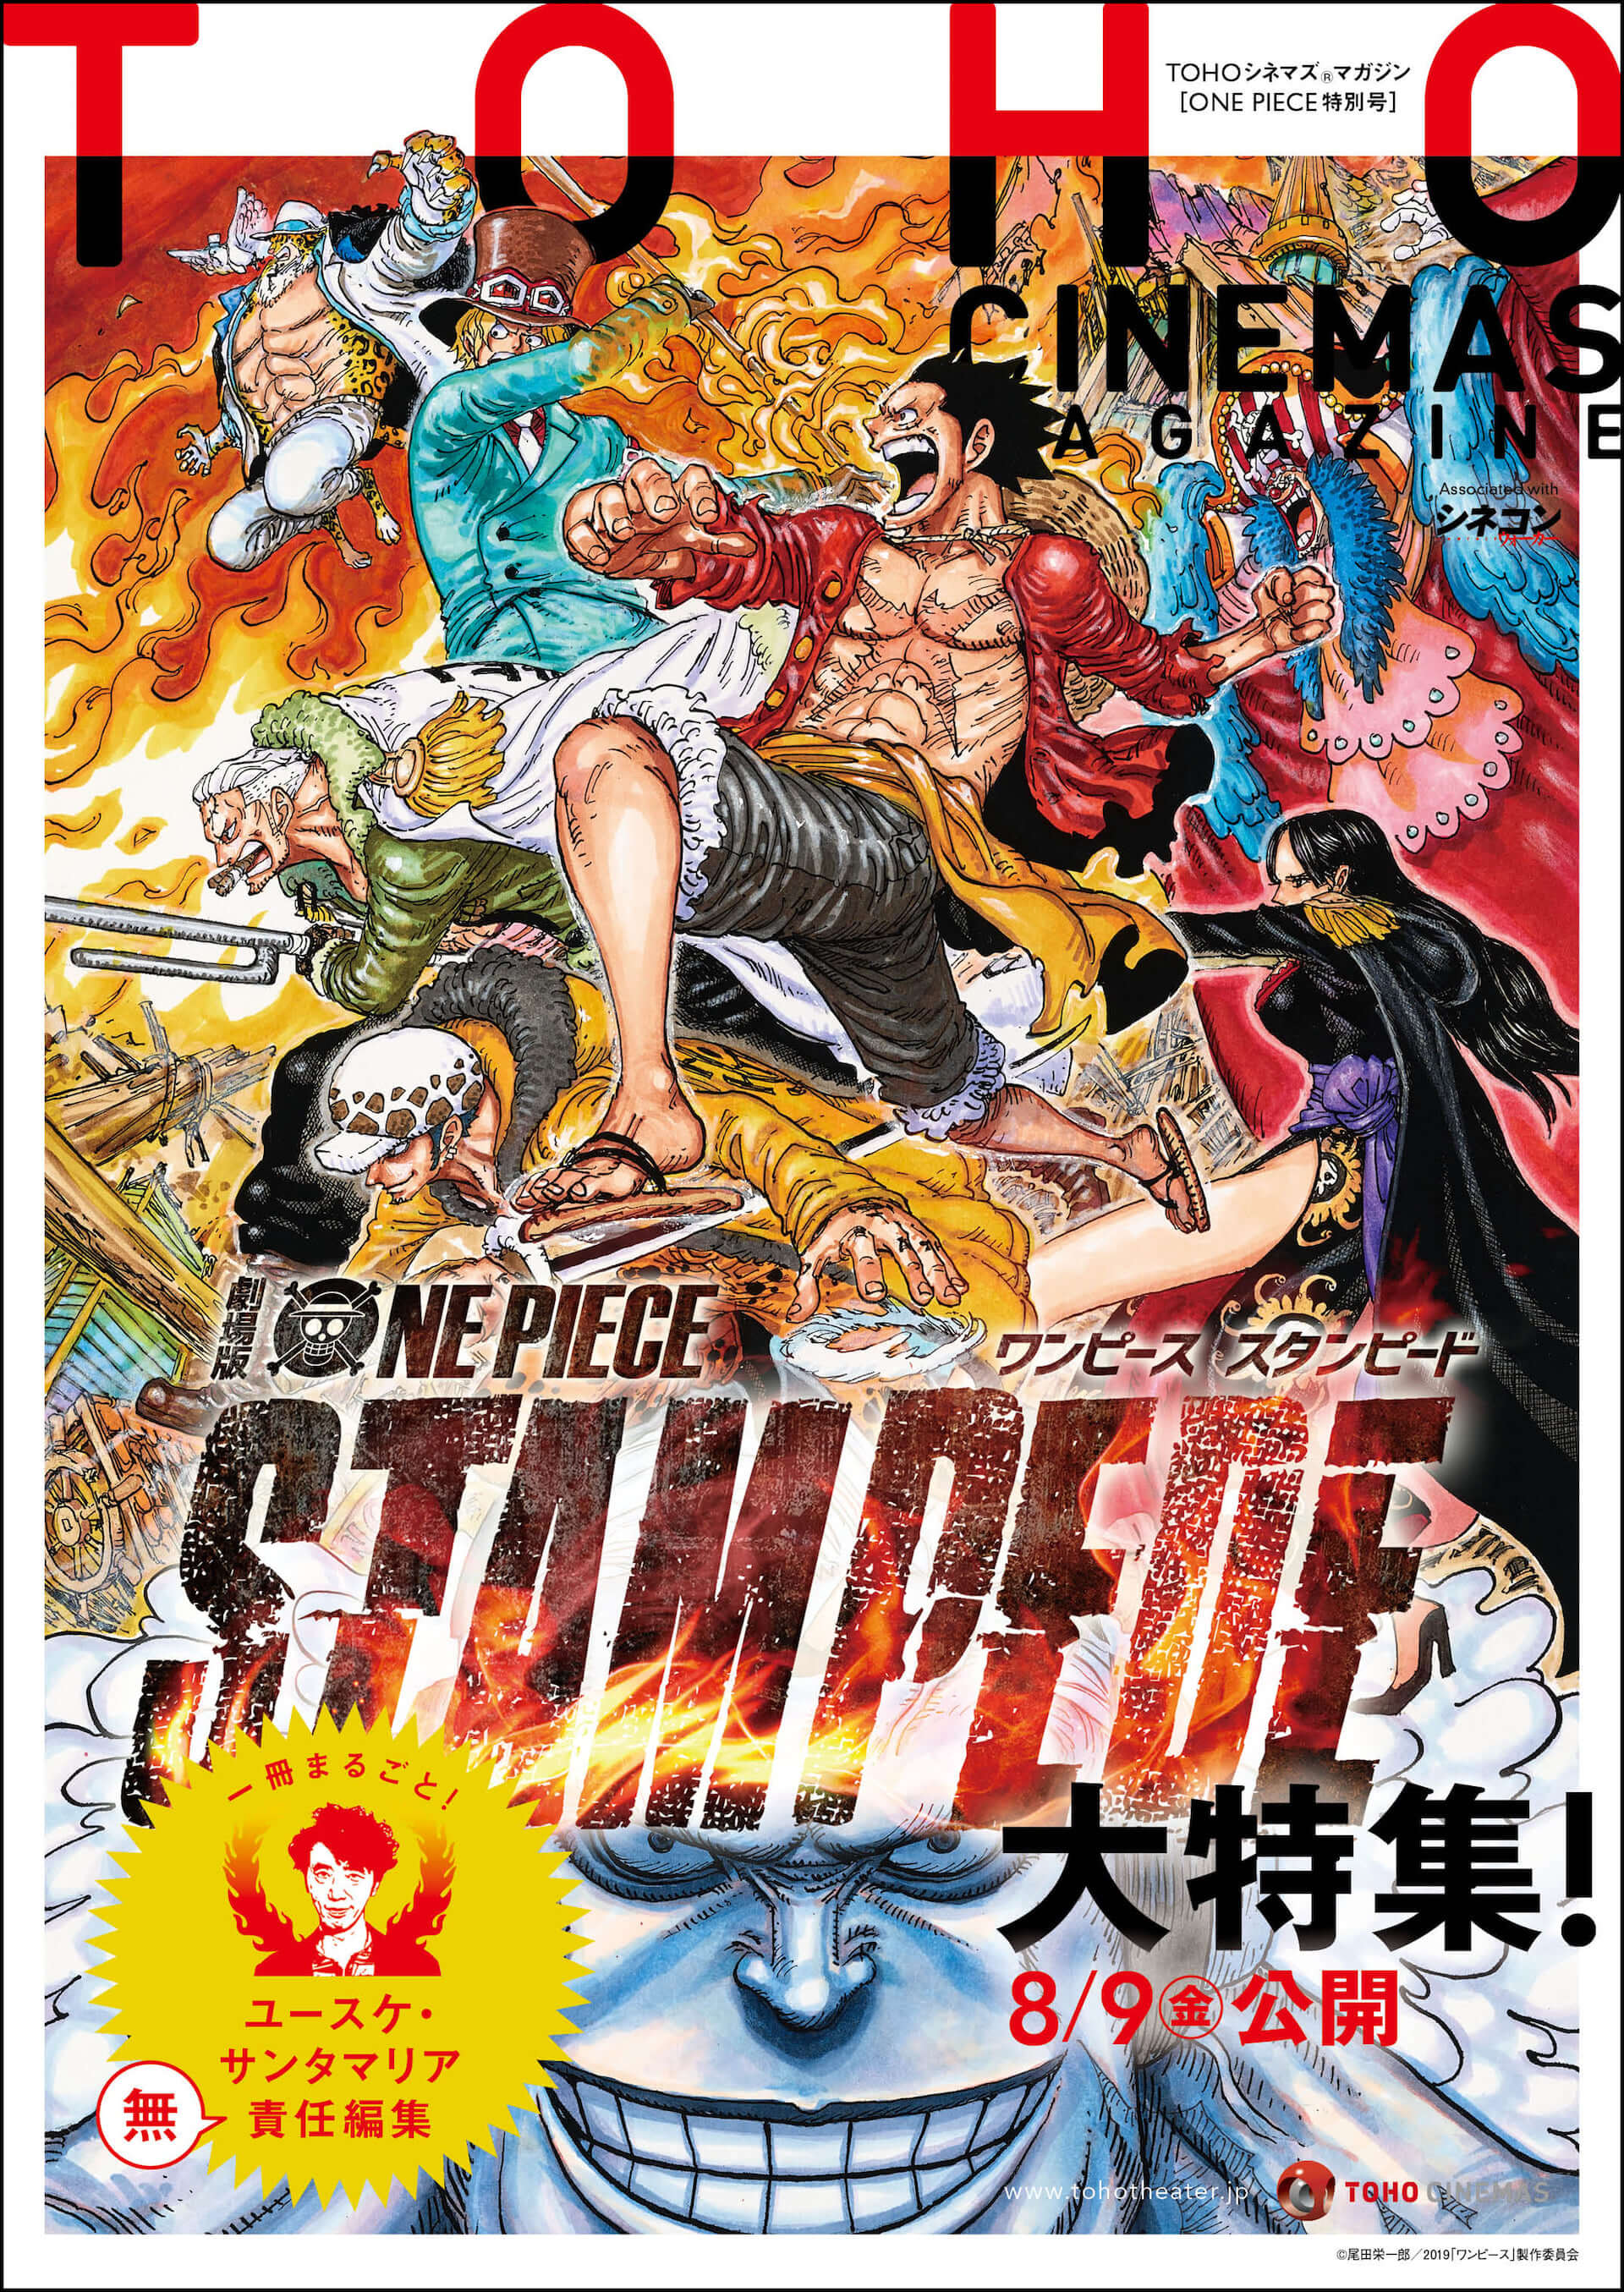 ユースケ サンタマリアがone Pieceへの異常な愛を語る Tohoシネマズマガジン特別号が7月5日より発行開始 19年7月4日 エキサイトニュース